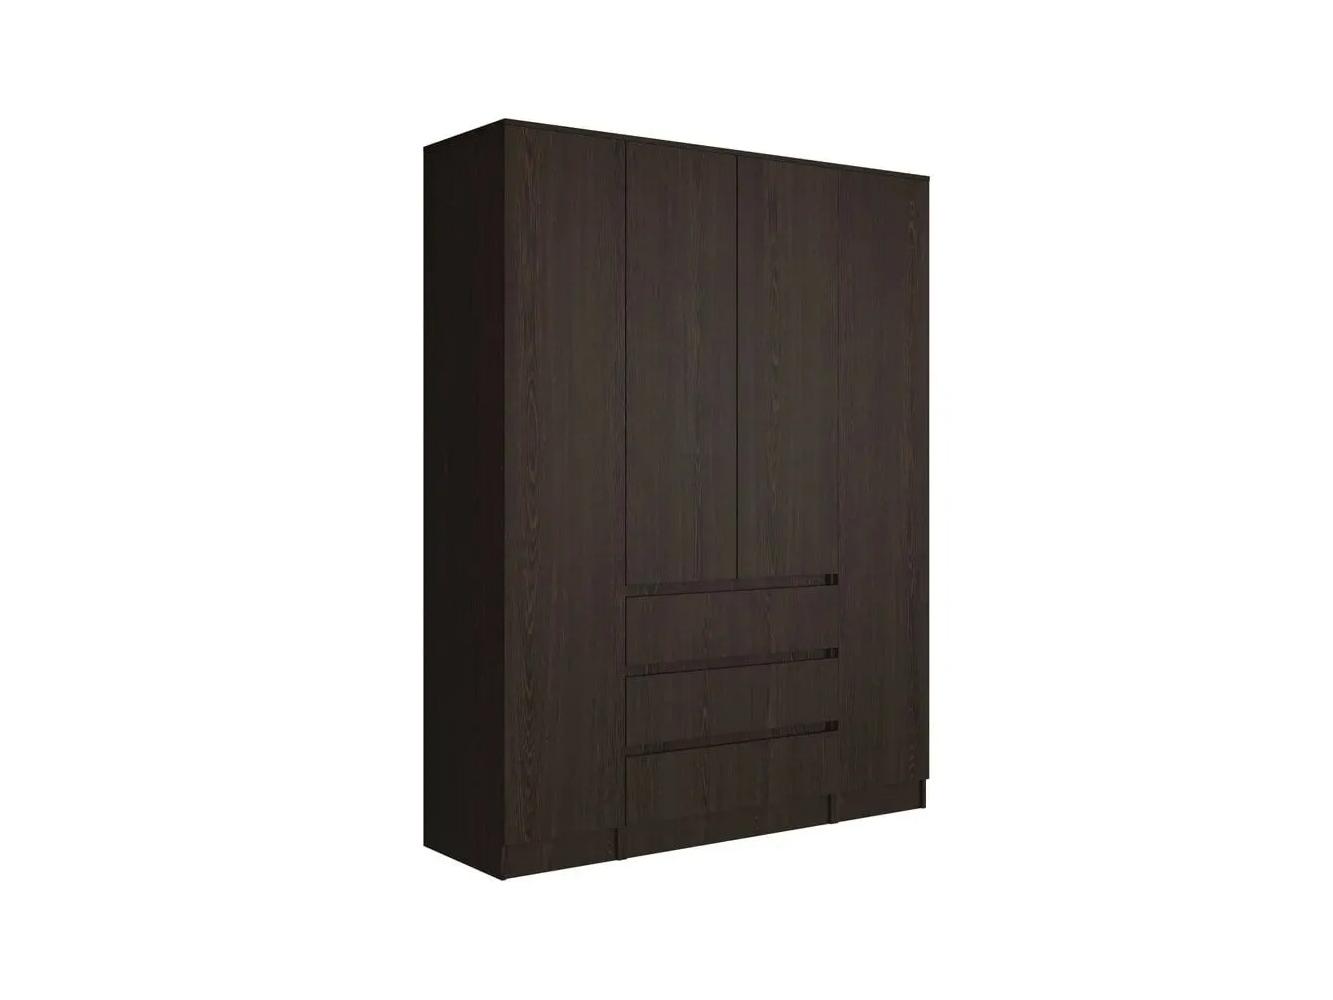 Распашной шкаф Мальм 315 brown ИКЕА (IKEA) изображение товара